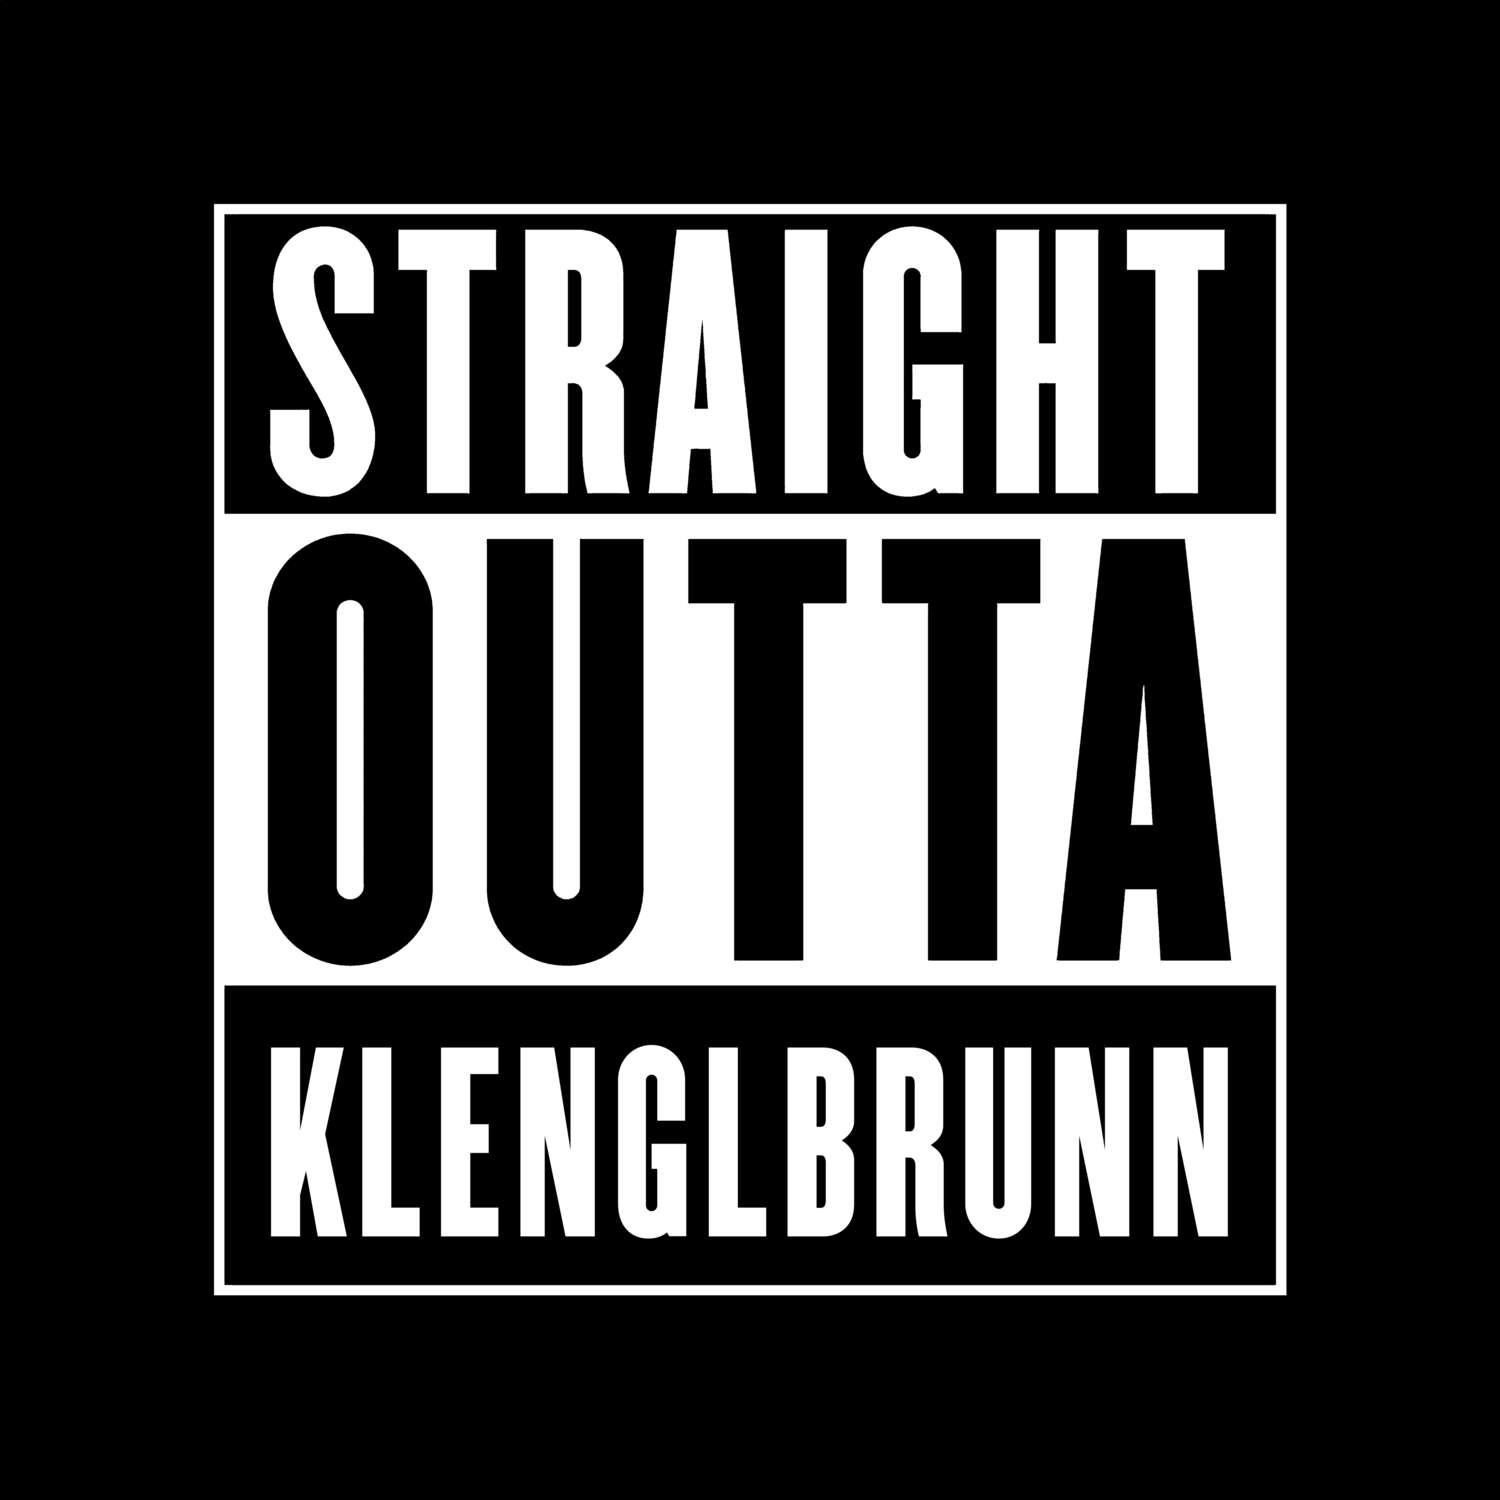 Klenglbrunn T-Shirt »Straight Outta«